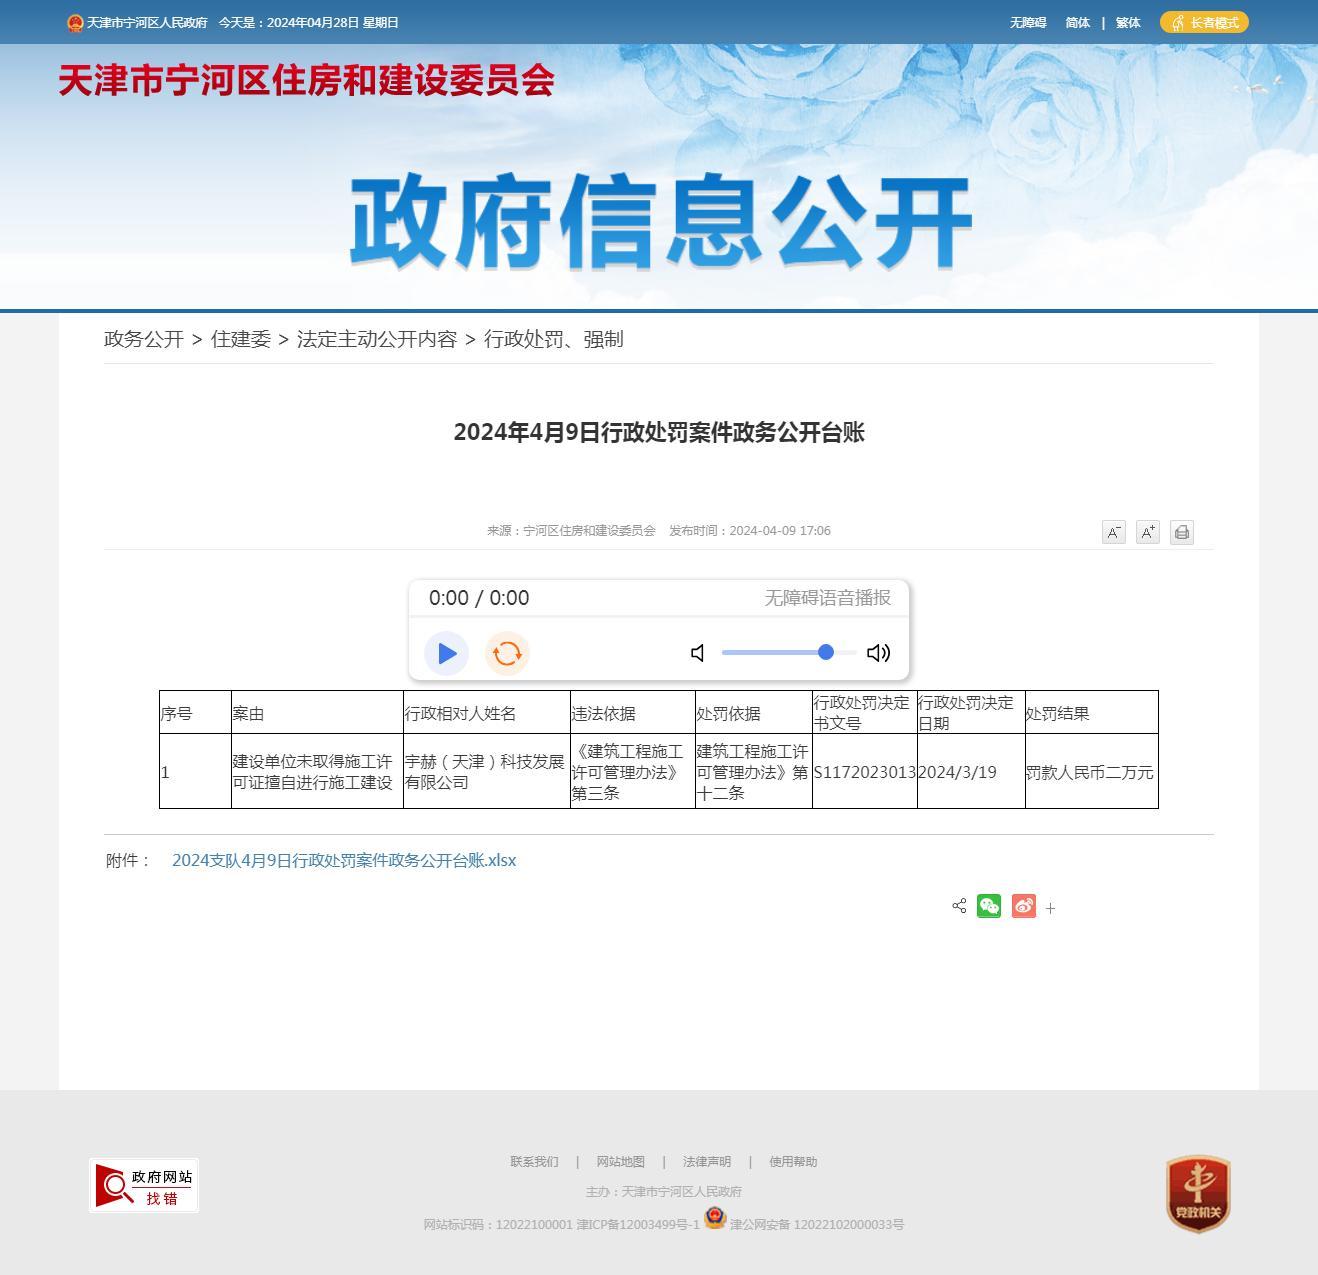 宇赫（天津）科技发展有限公司因未取得施工许可证擅自进行施工建设被罚2万元